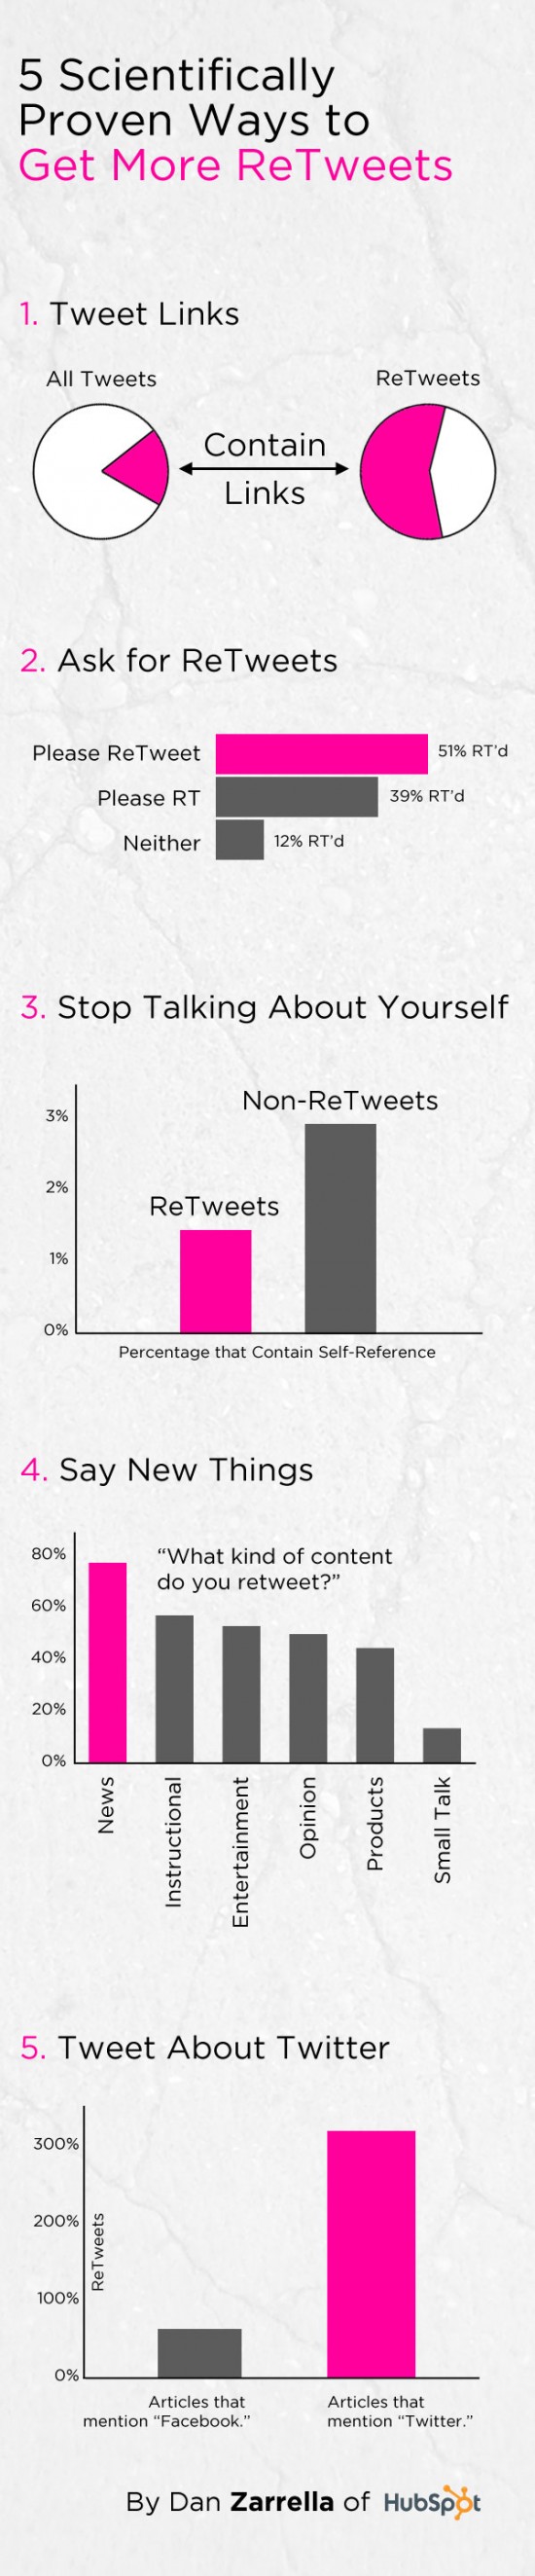 5 Trucos para generar más retweets (RT) #Infografía 1